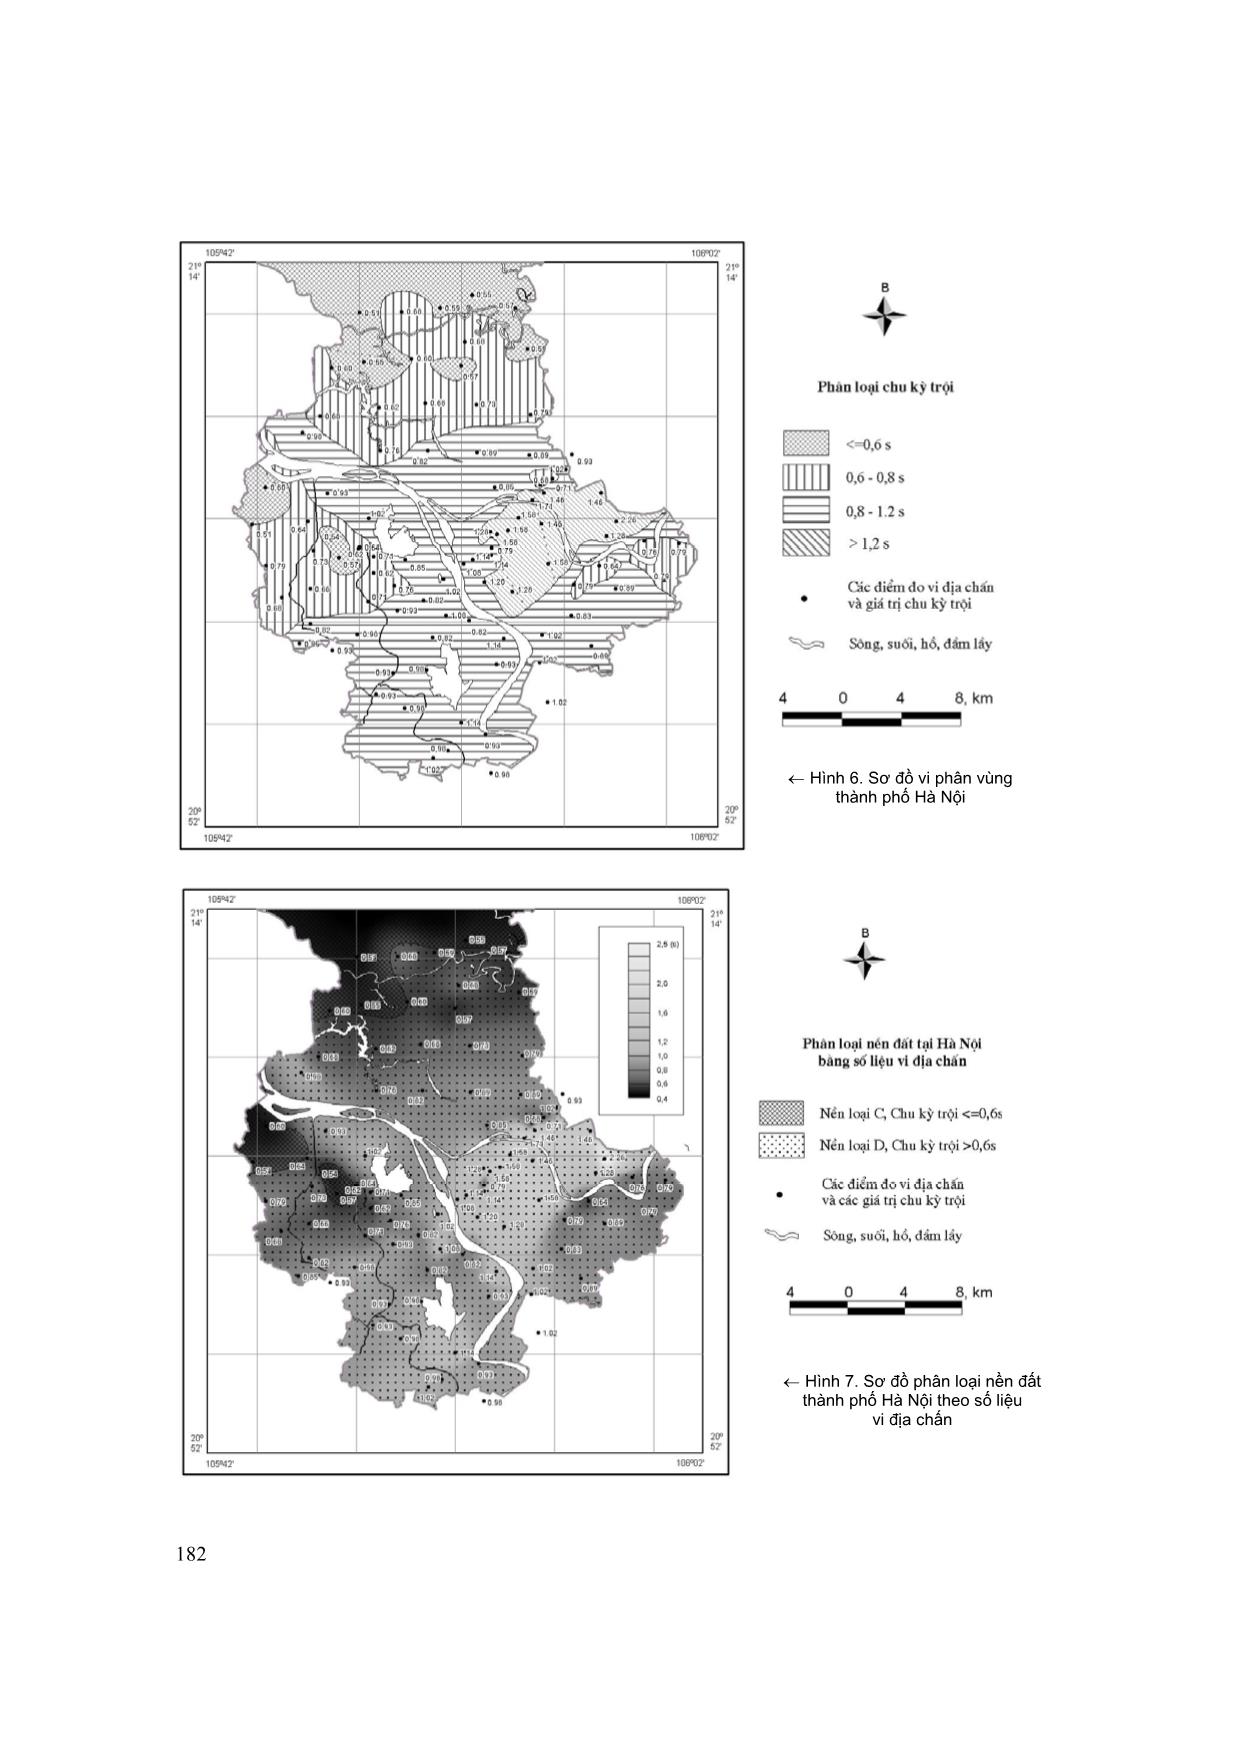 Sơ đồ vi phân vùng động đất thành phố Hà Nội trên cơ sở các kết quả đo dao động vi địa chấn trang 8